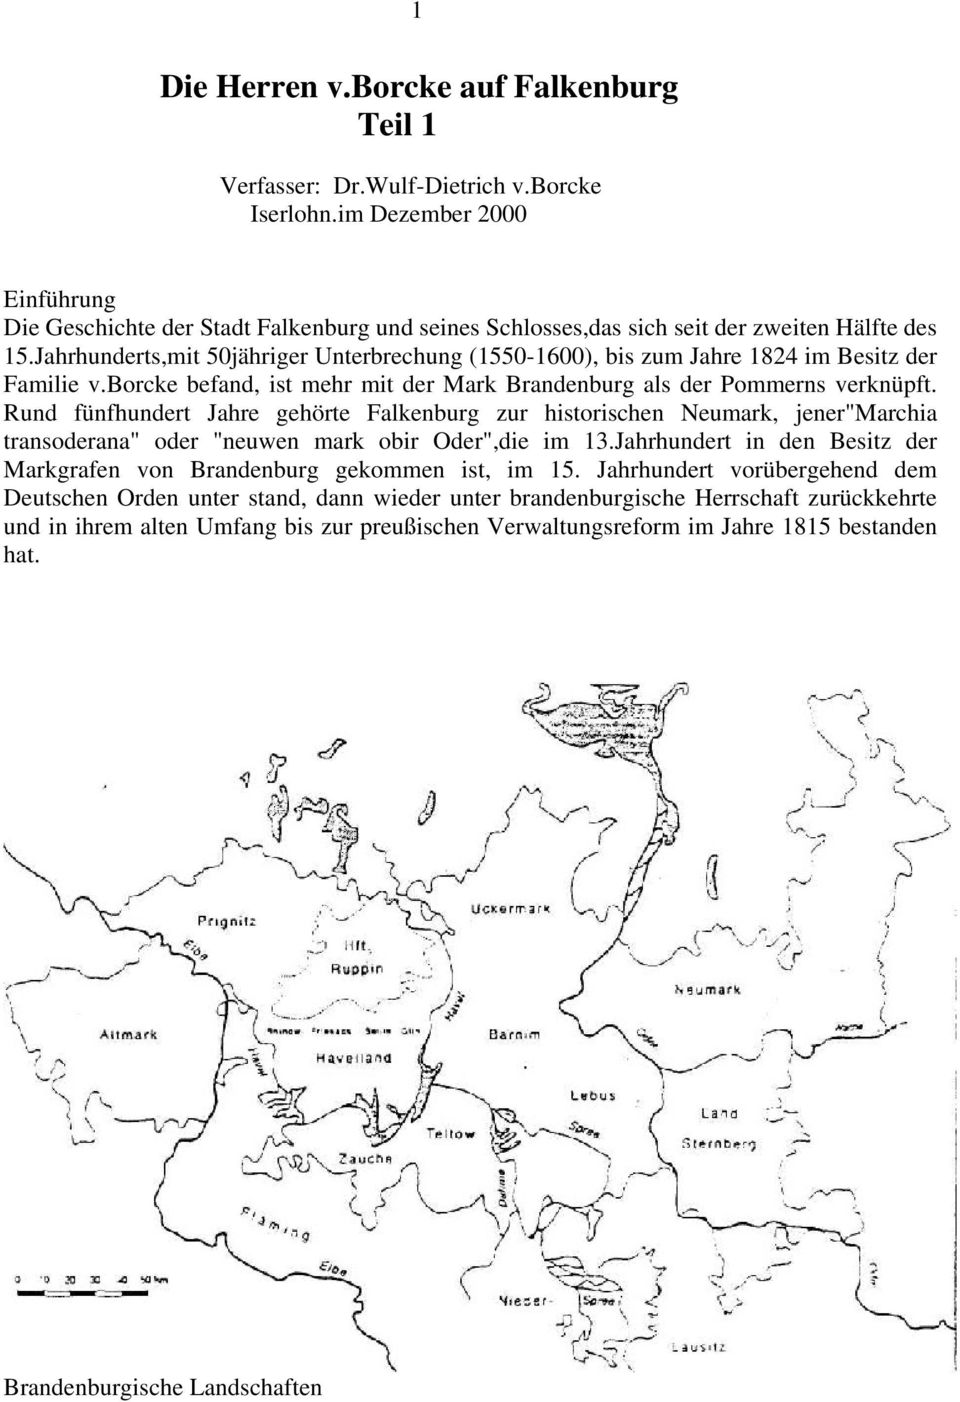 Jahrhunderts,mit 50jähriger Unterbrechung (1550-1600), bis zum Jahre 1824 im Besitz der Familie v.borcke befand, ist mehr mit der Mark Brandenburg als der Pommerns verknüpft.